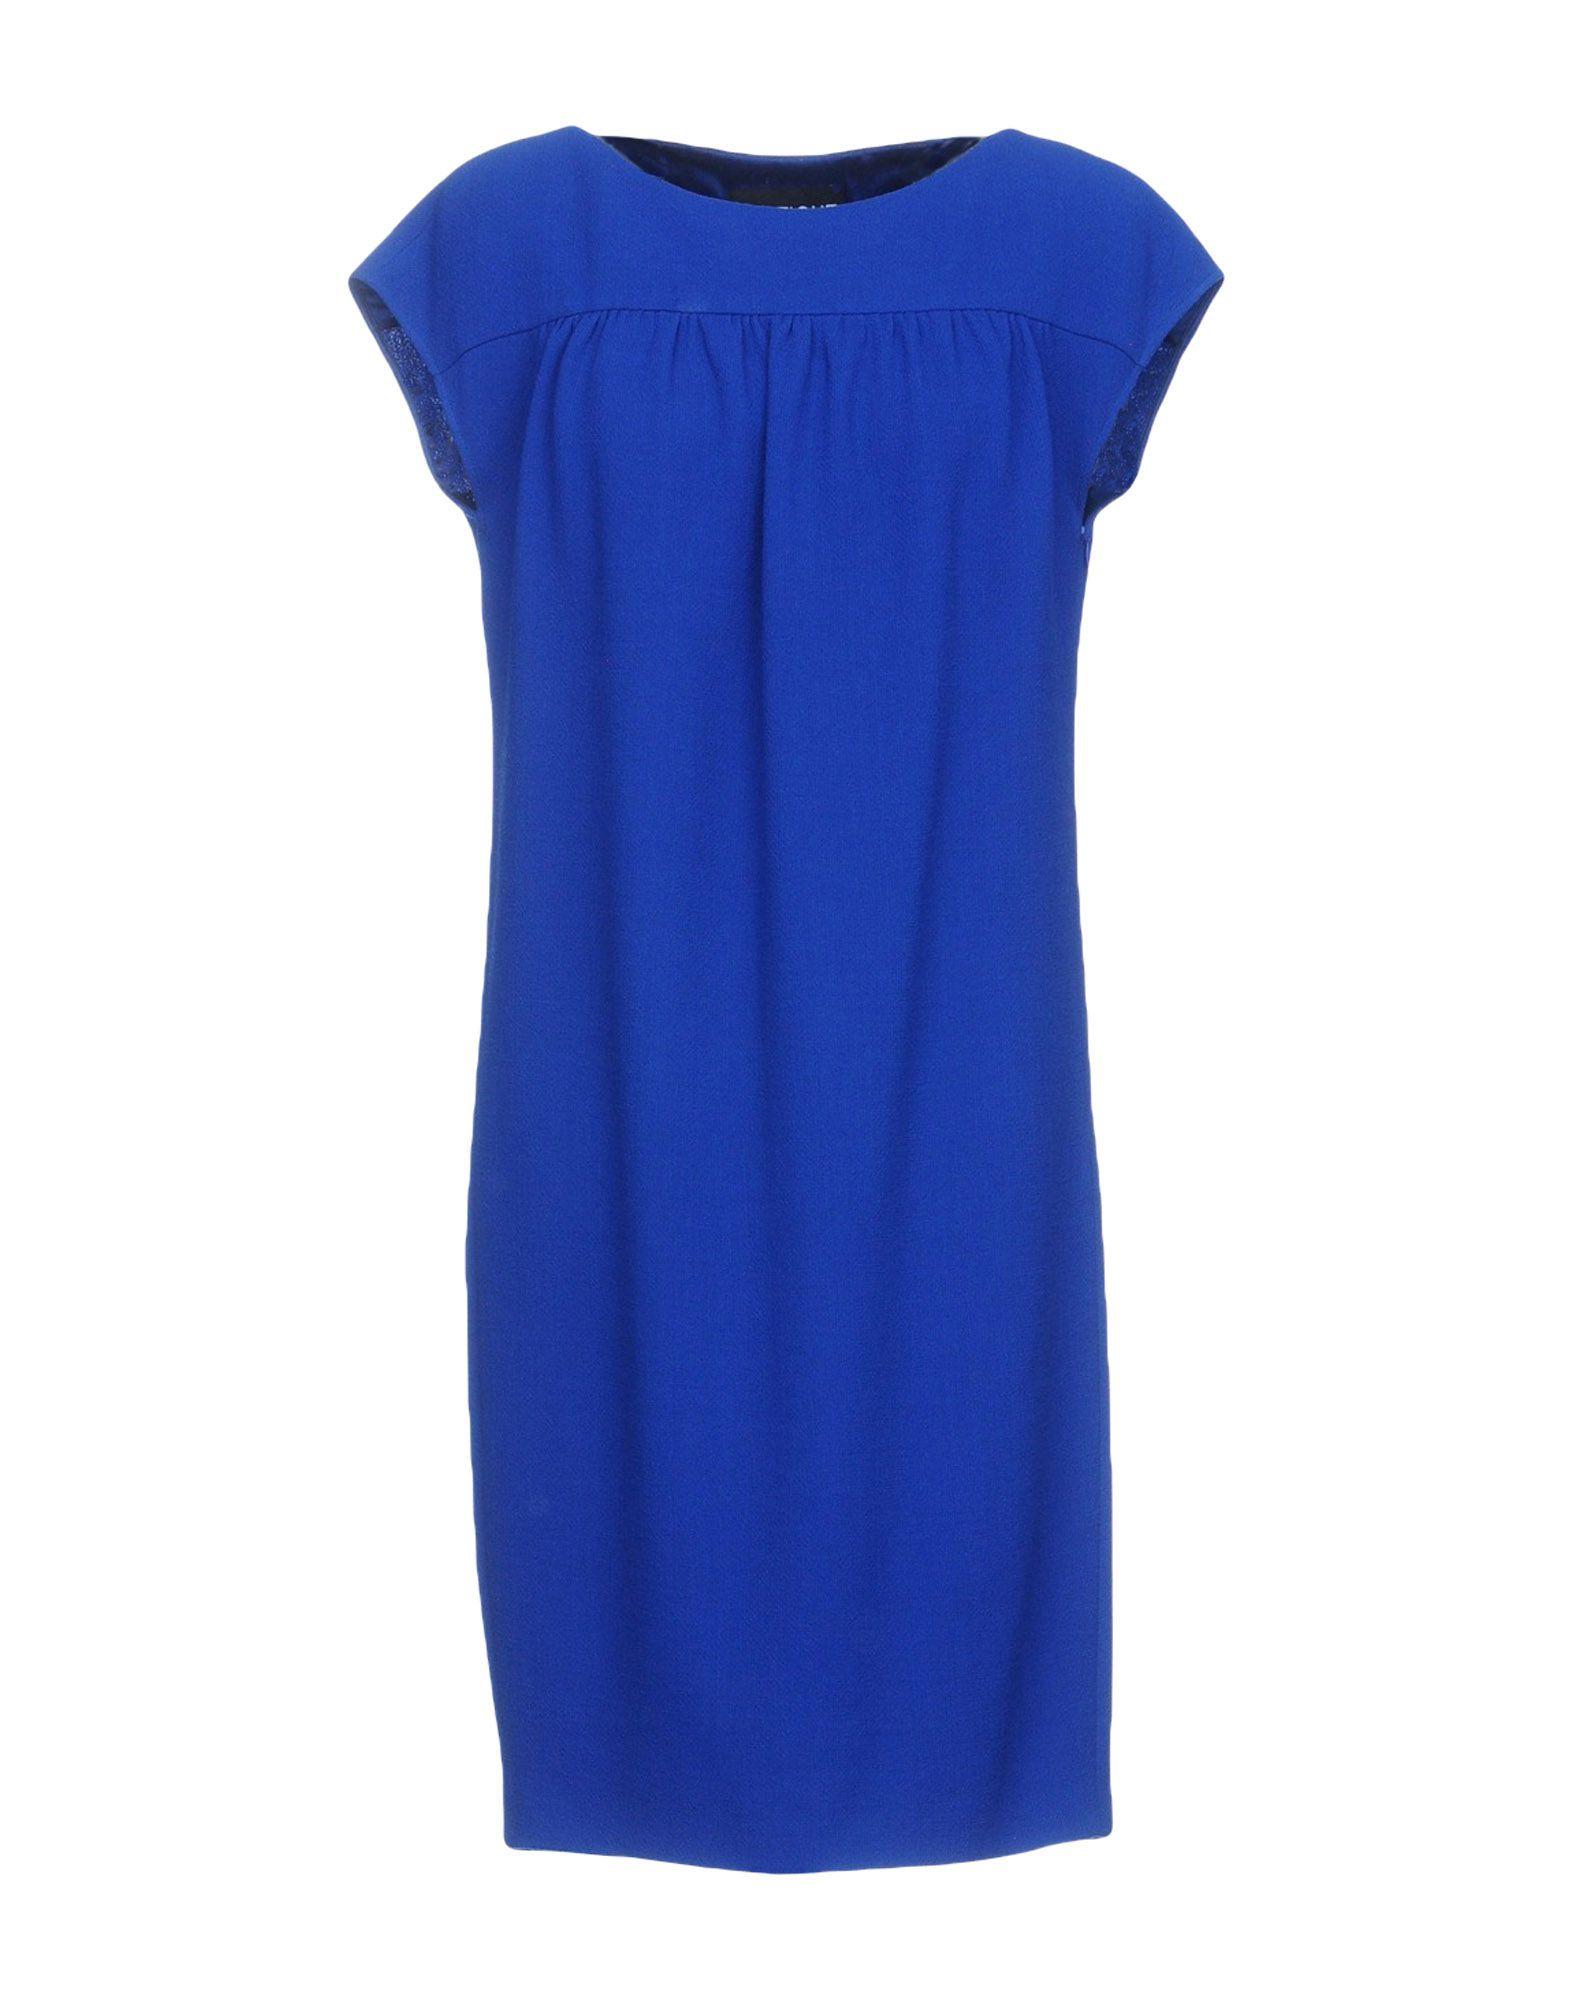 Boutique Moschino Wool Short Dress in Dark Blue (Blue) - Lyst